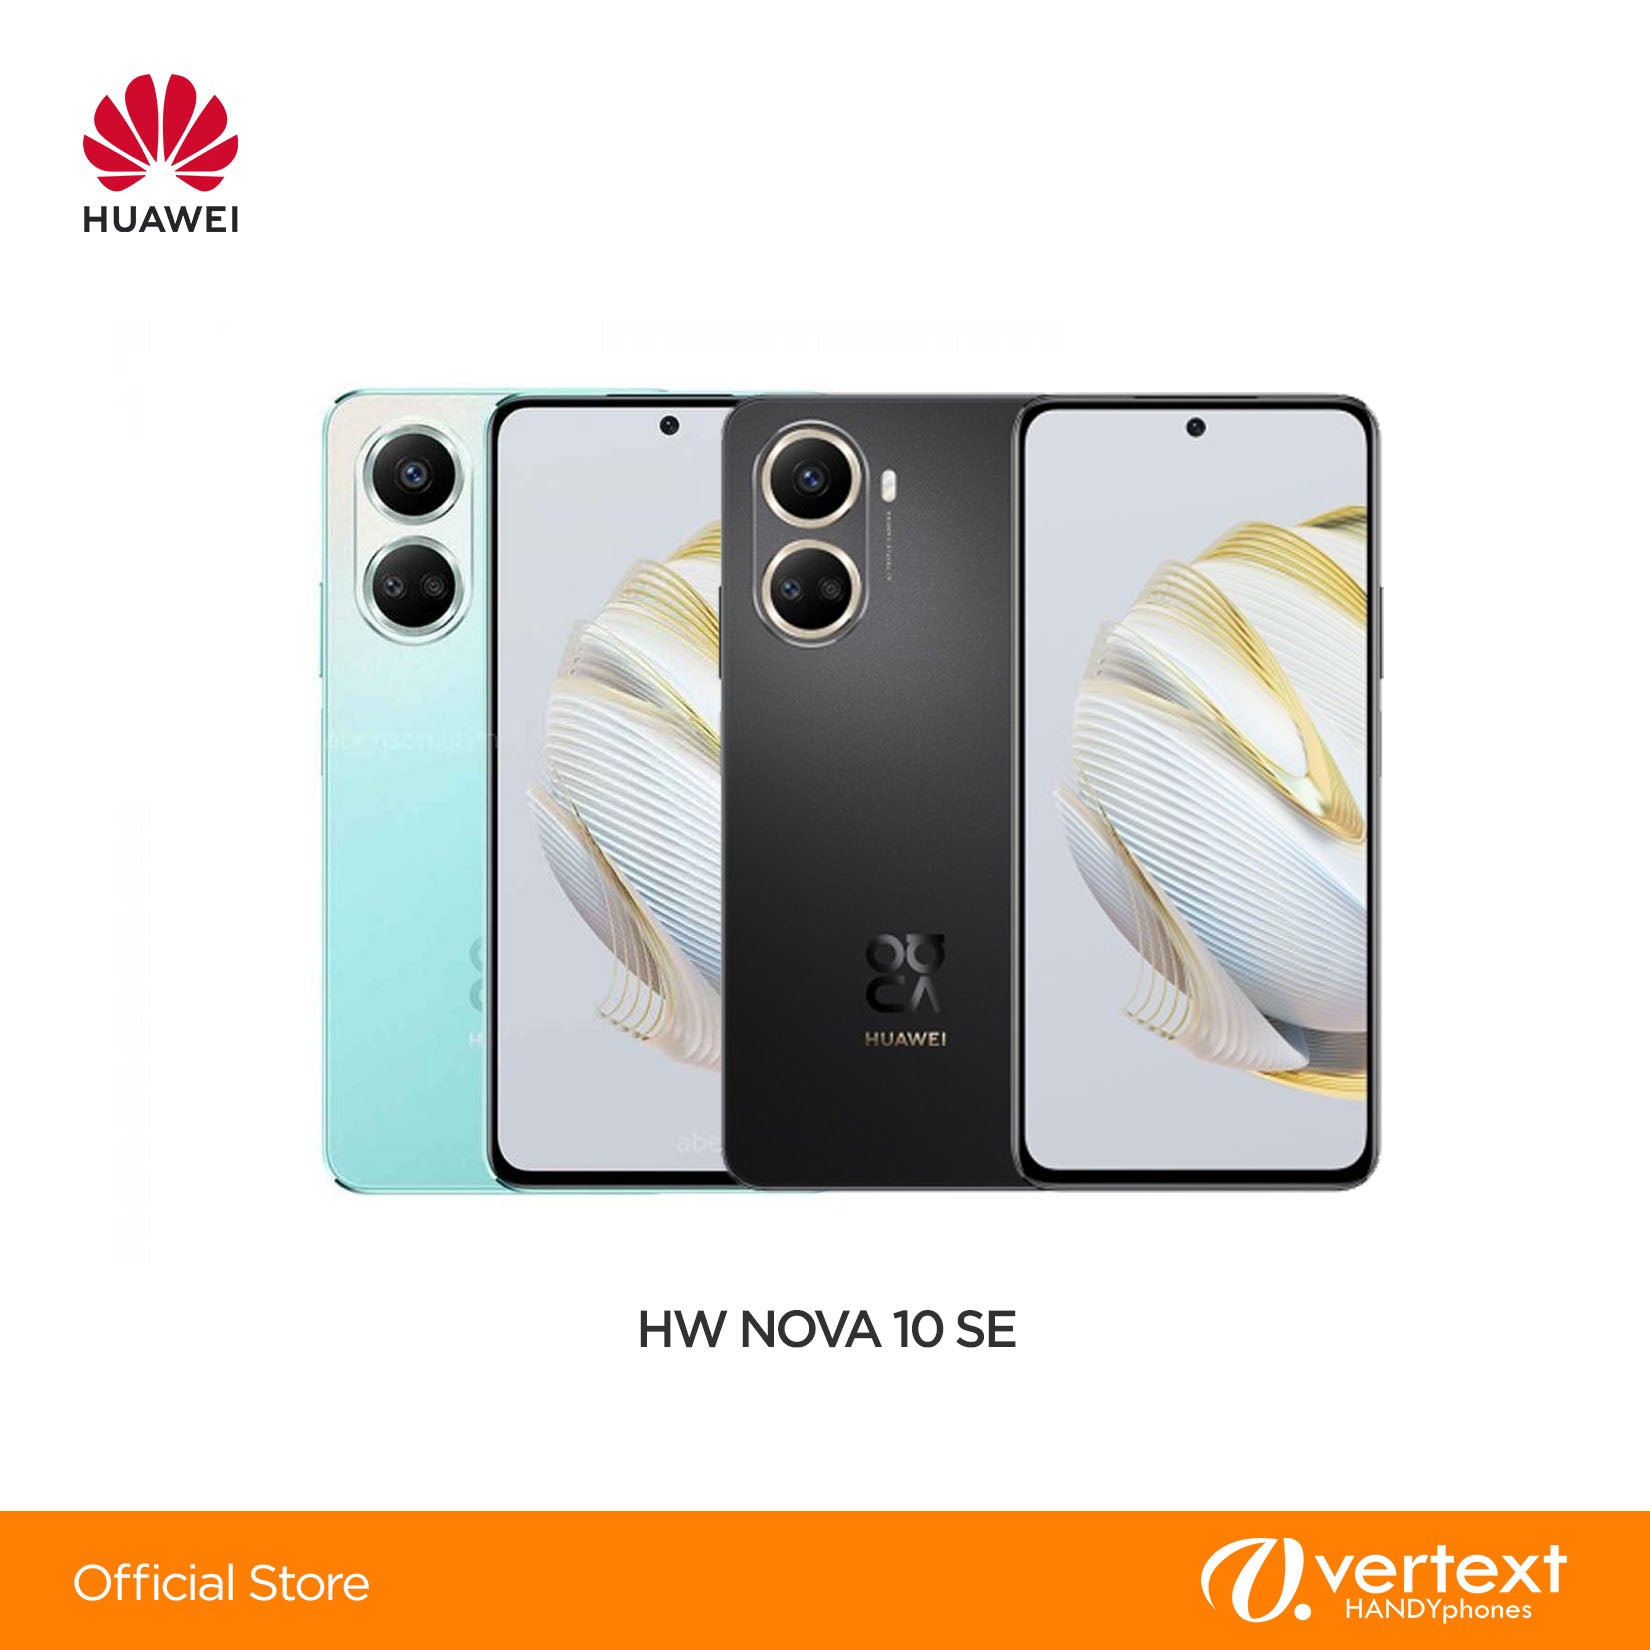 Huawei NOVA 10 SE